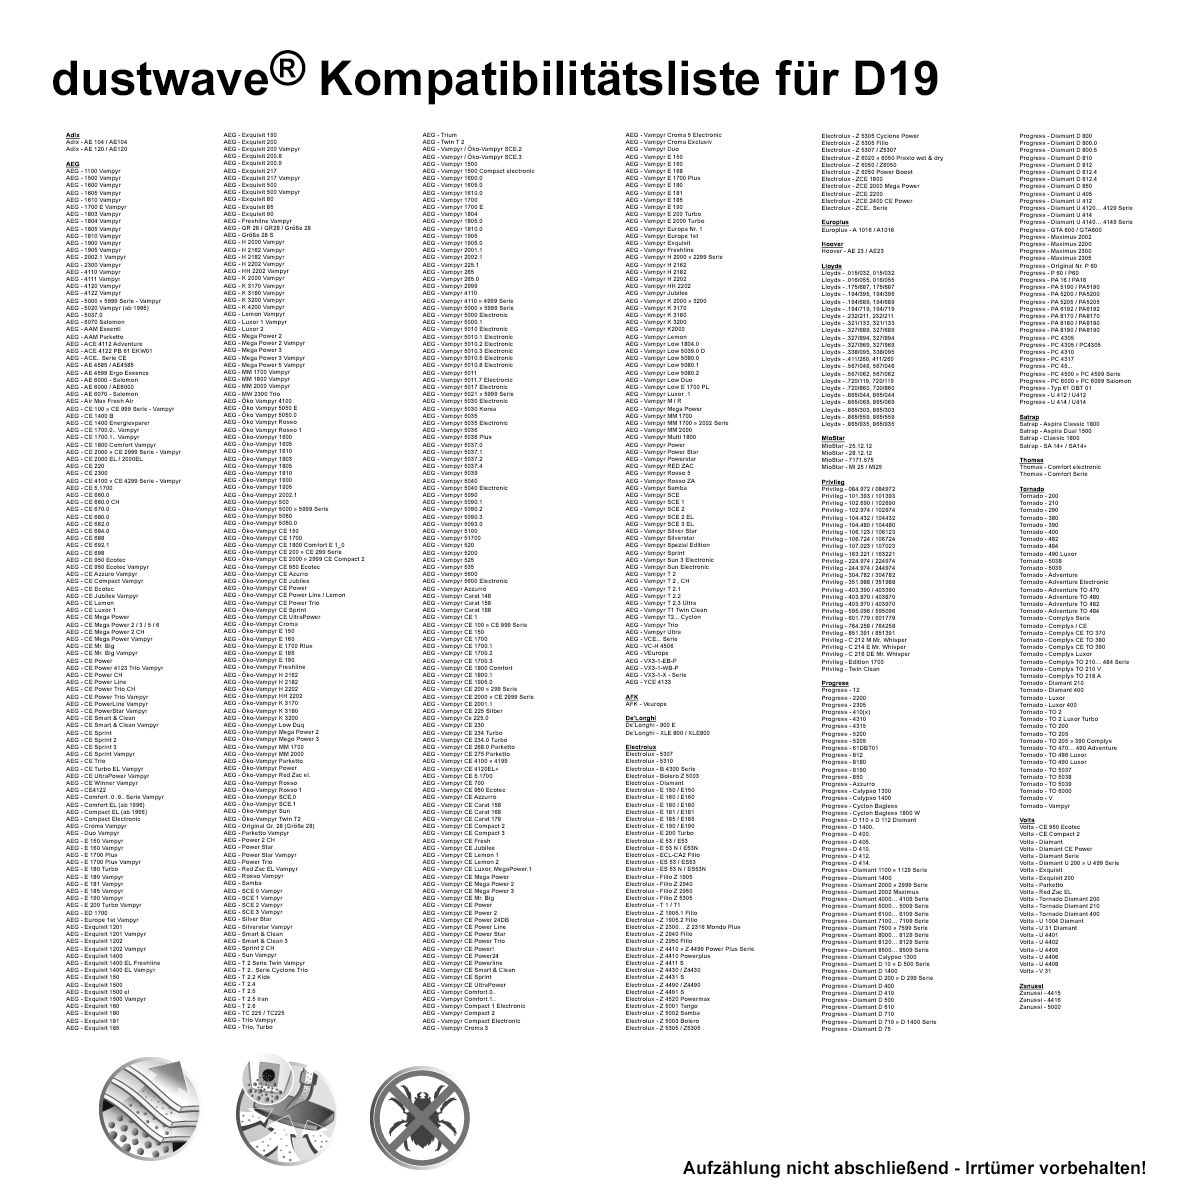 Dustwave® 20 Staubsaugerbeutel für AEG Vampyr CE 270 - hocheffizient, mehrlagiges Mikrovlies mit Hygieneverschluss - Made in Germany